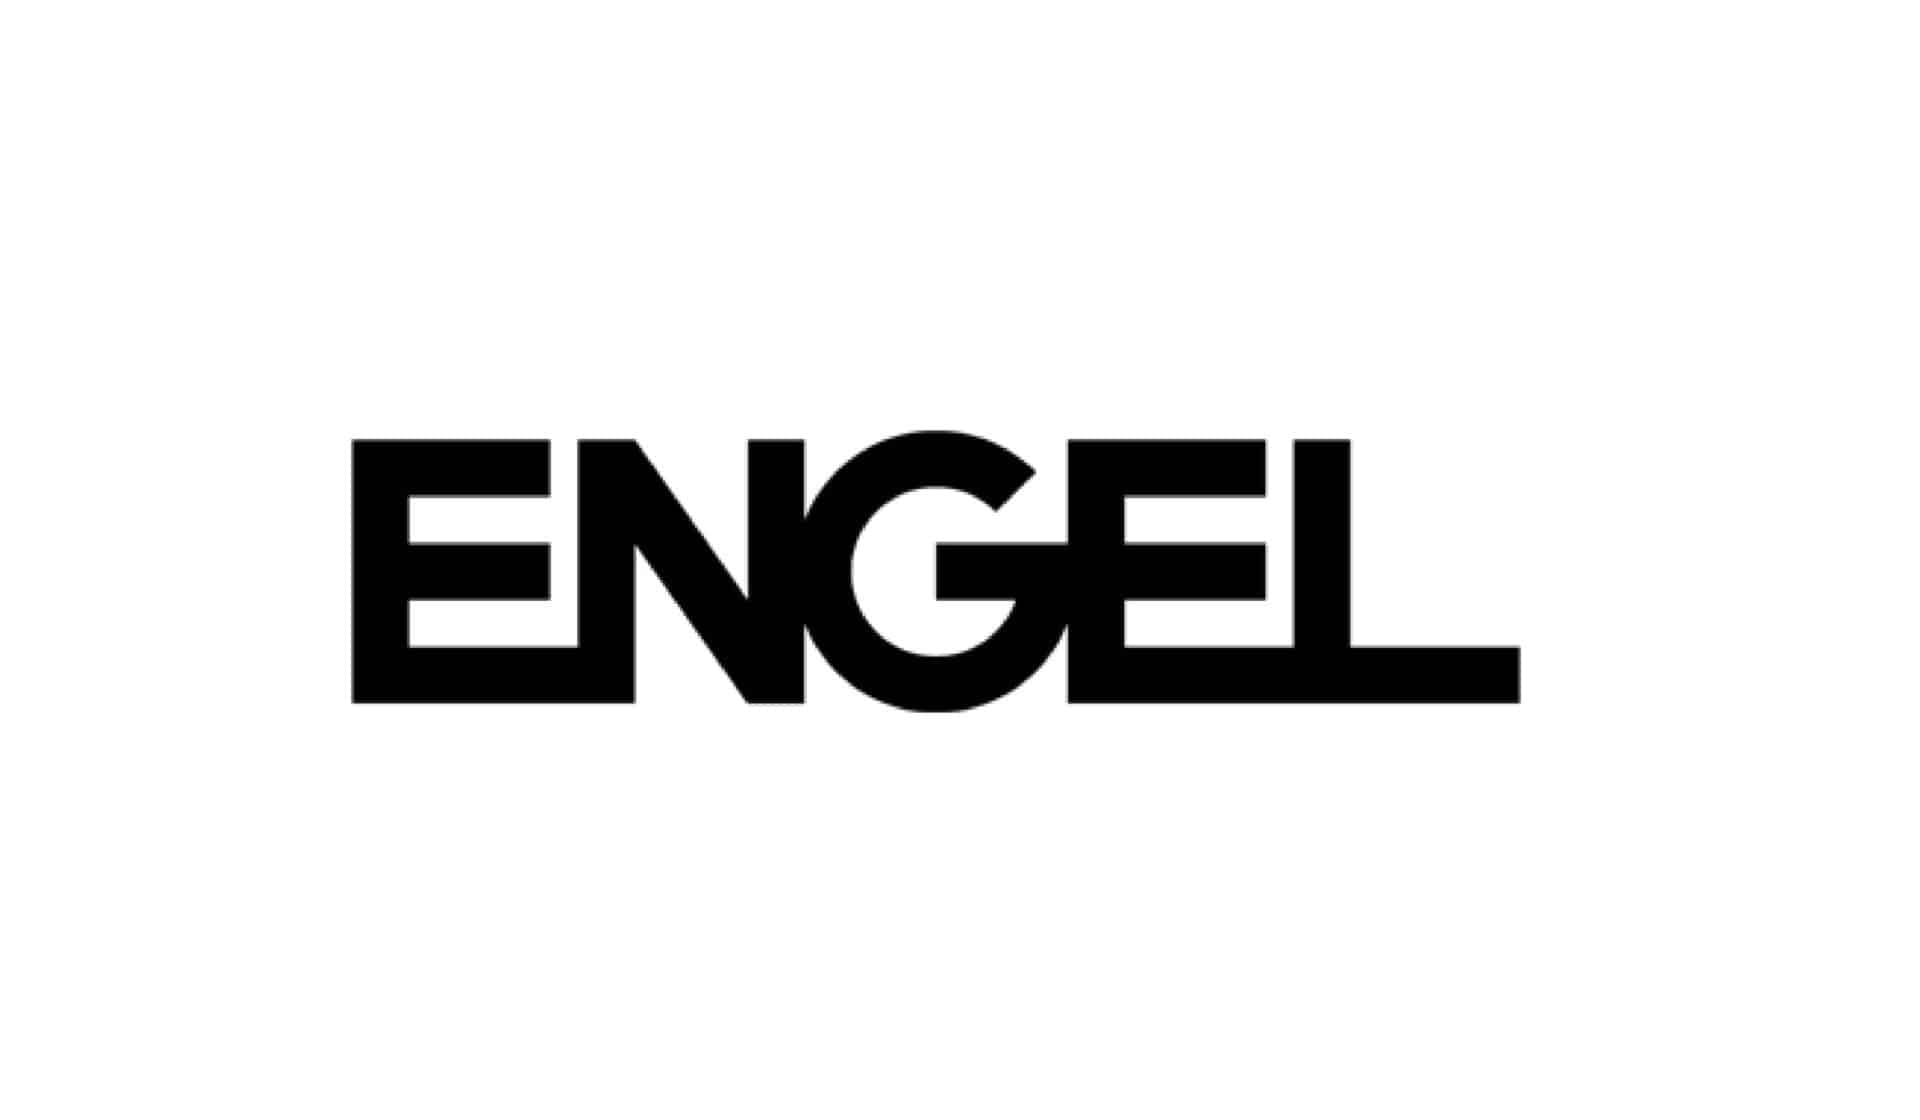 ENGEL logo in bold black letters